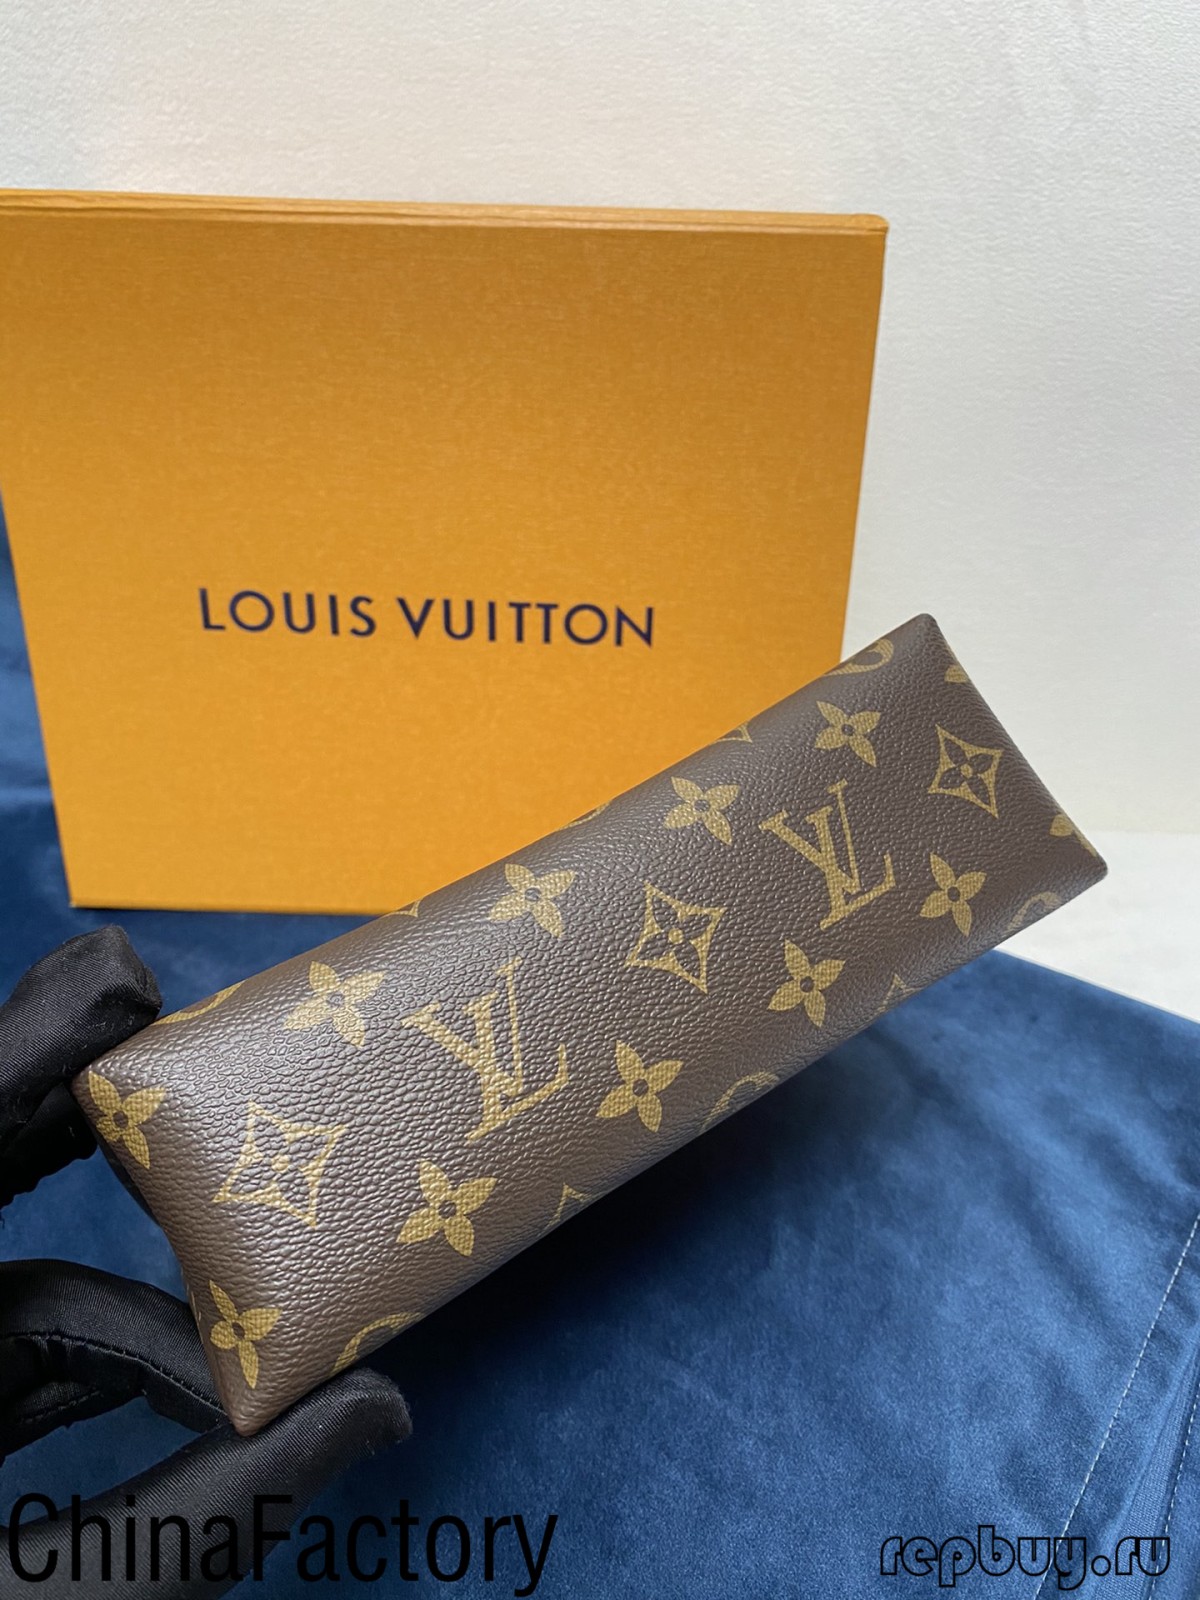 Enkele beoordelingen van aaa replicatassen om te delen (2022 nieuwe uitgave) - Beste kwaliteit nep Louis Vuitton tas online winkel, replica designer tas ru